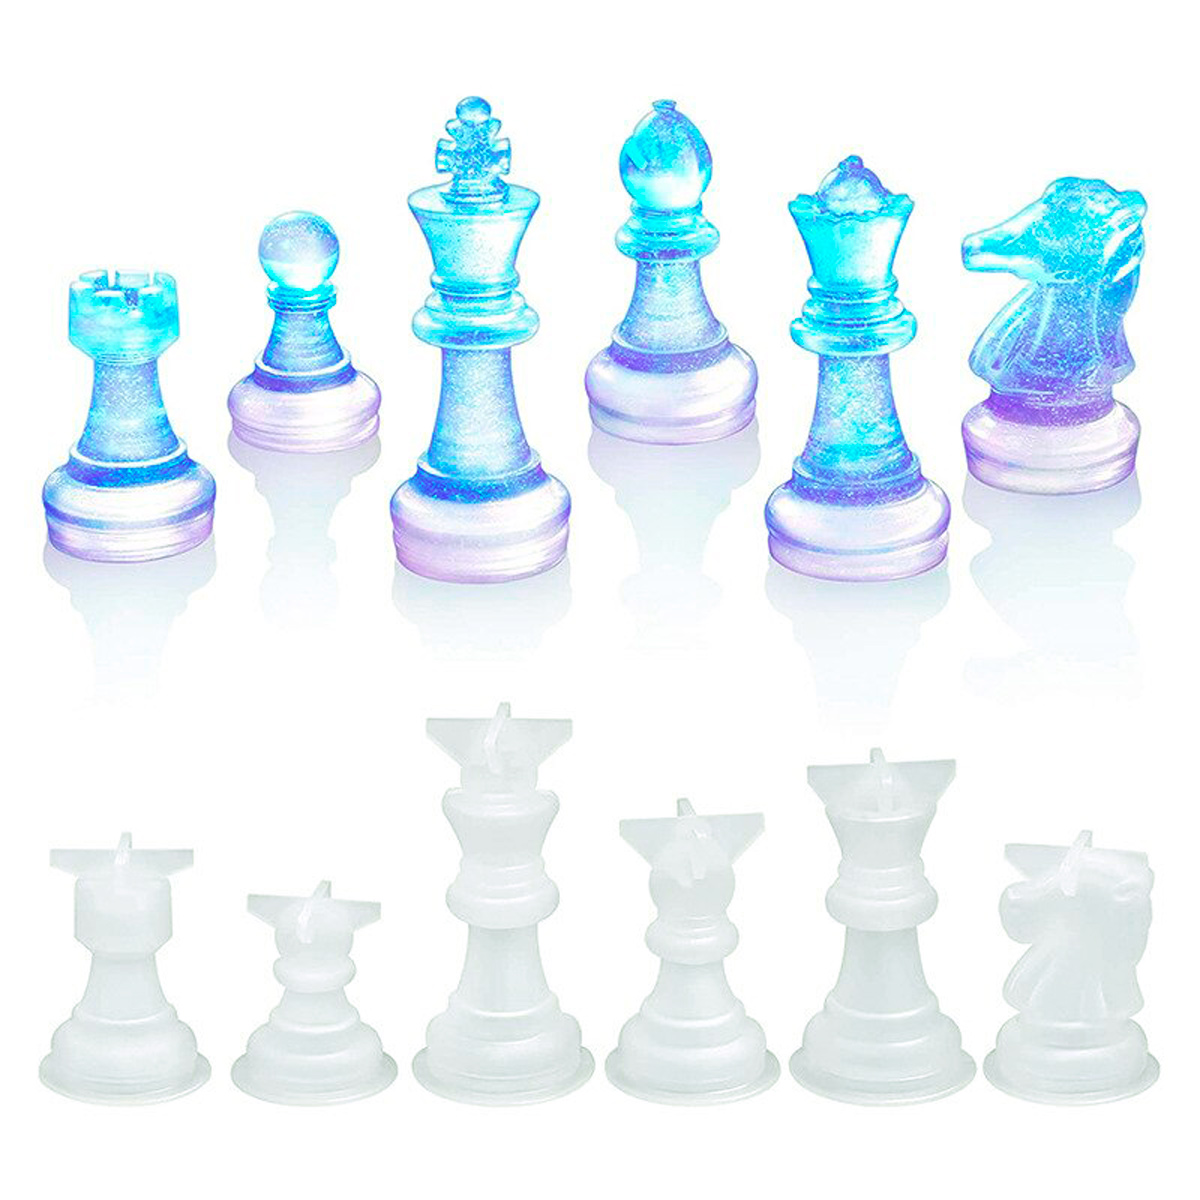 Как сделать шахматы своими руками